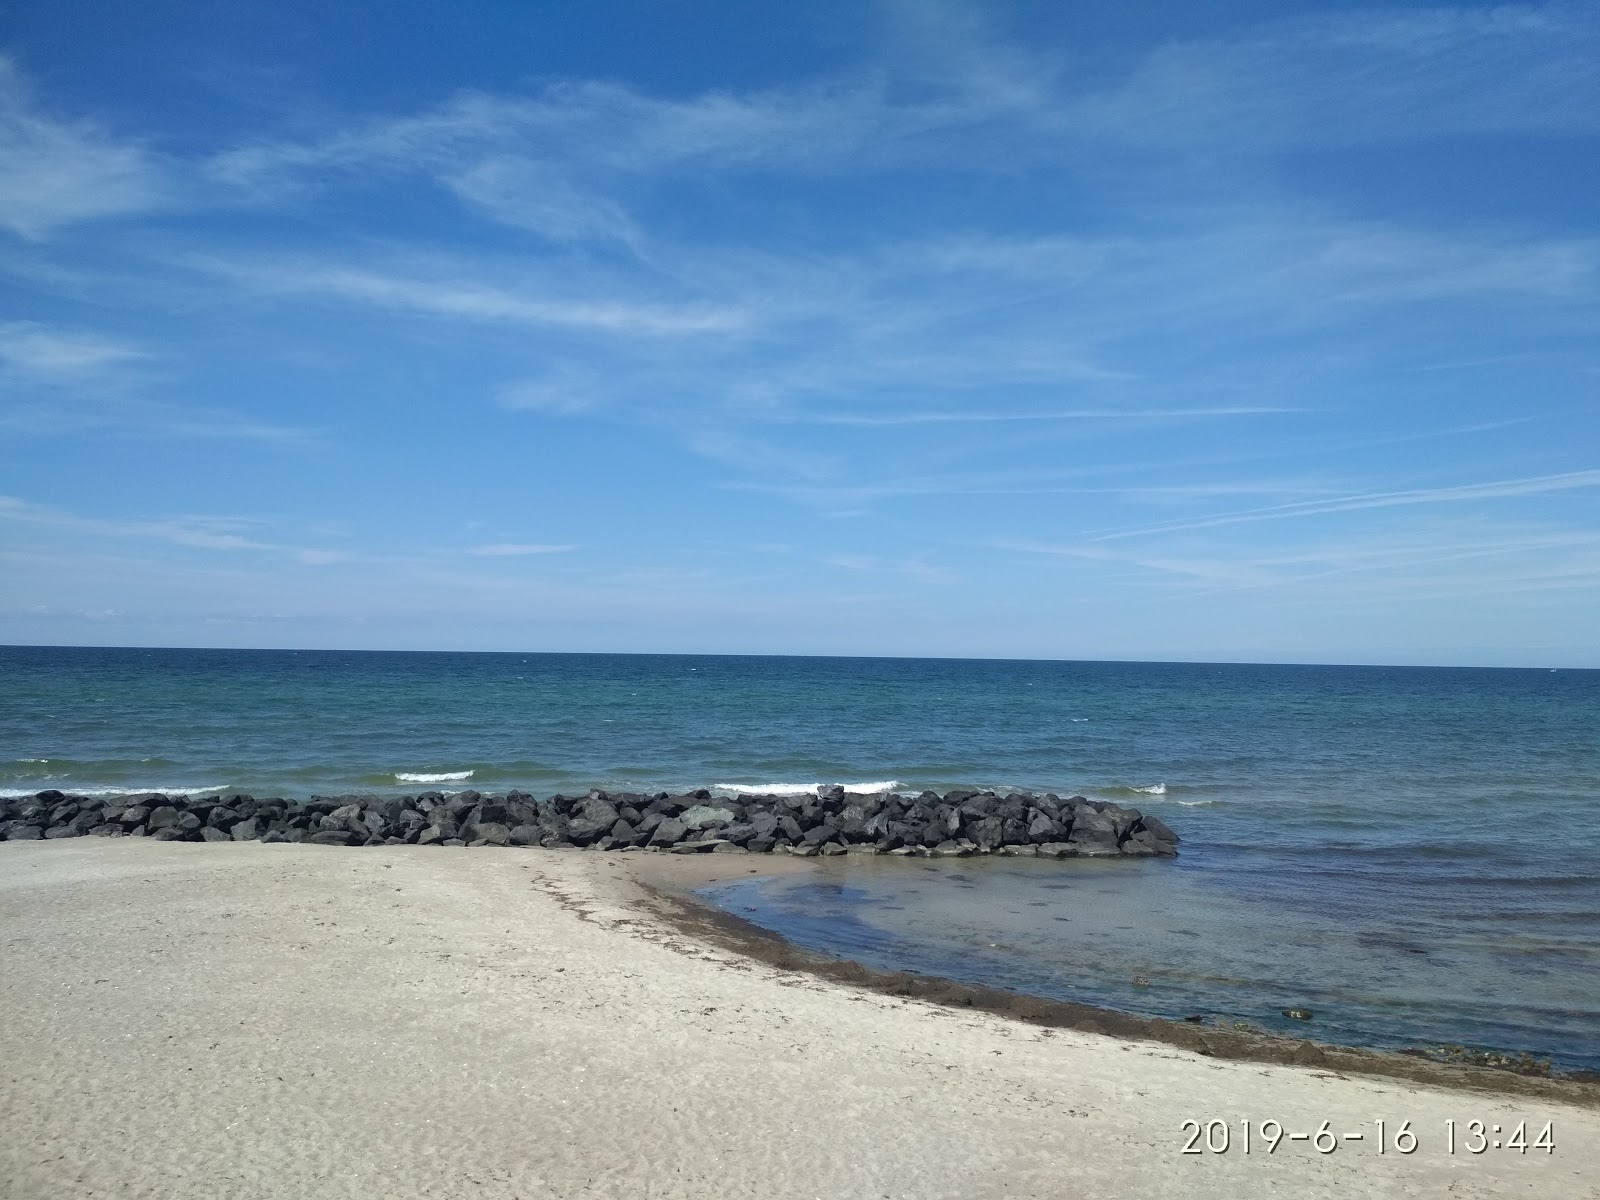 Photo de Galgebjerg Beach - endroit populaire parmi les connaisseurs de la détente